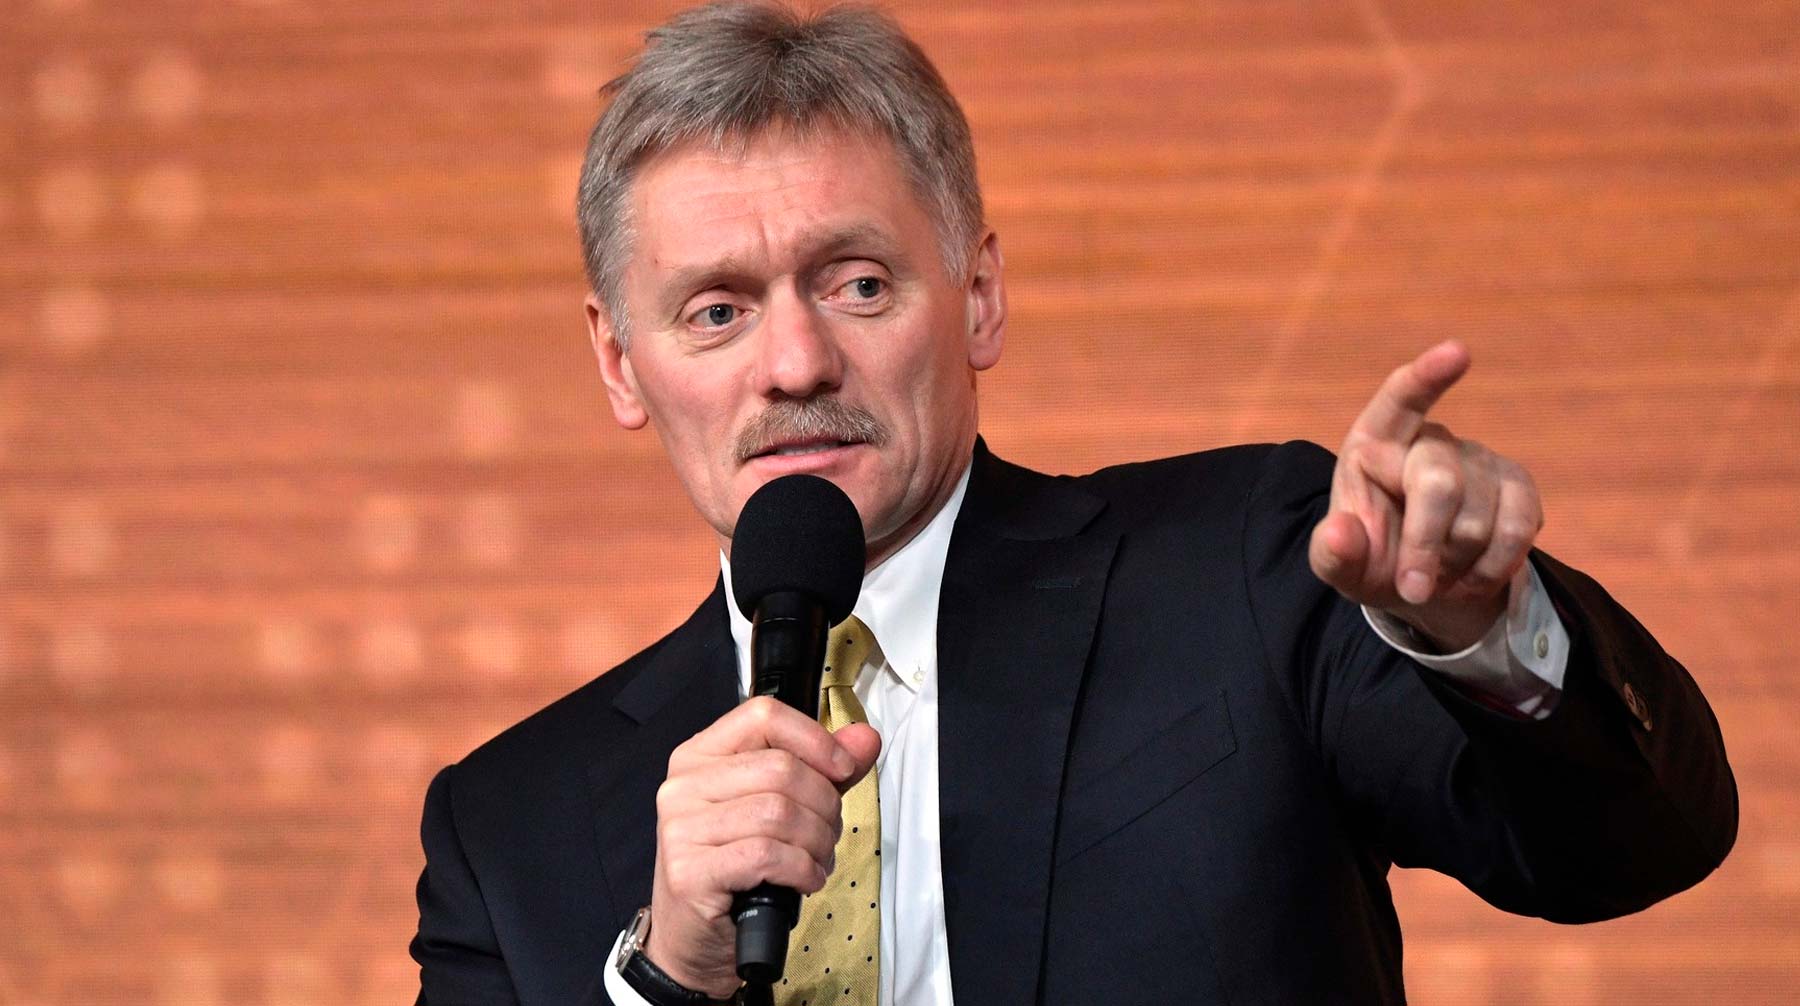 У оппозиционера есть возможность вернуться в Россию, отметил пресс-секретарь президента РФ Фото: © kremlin.ru